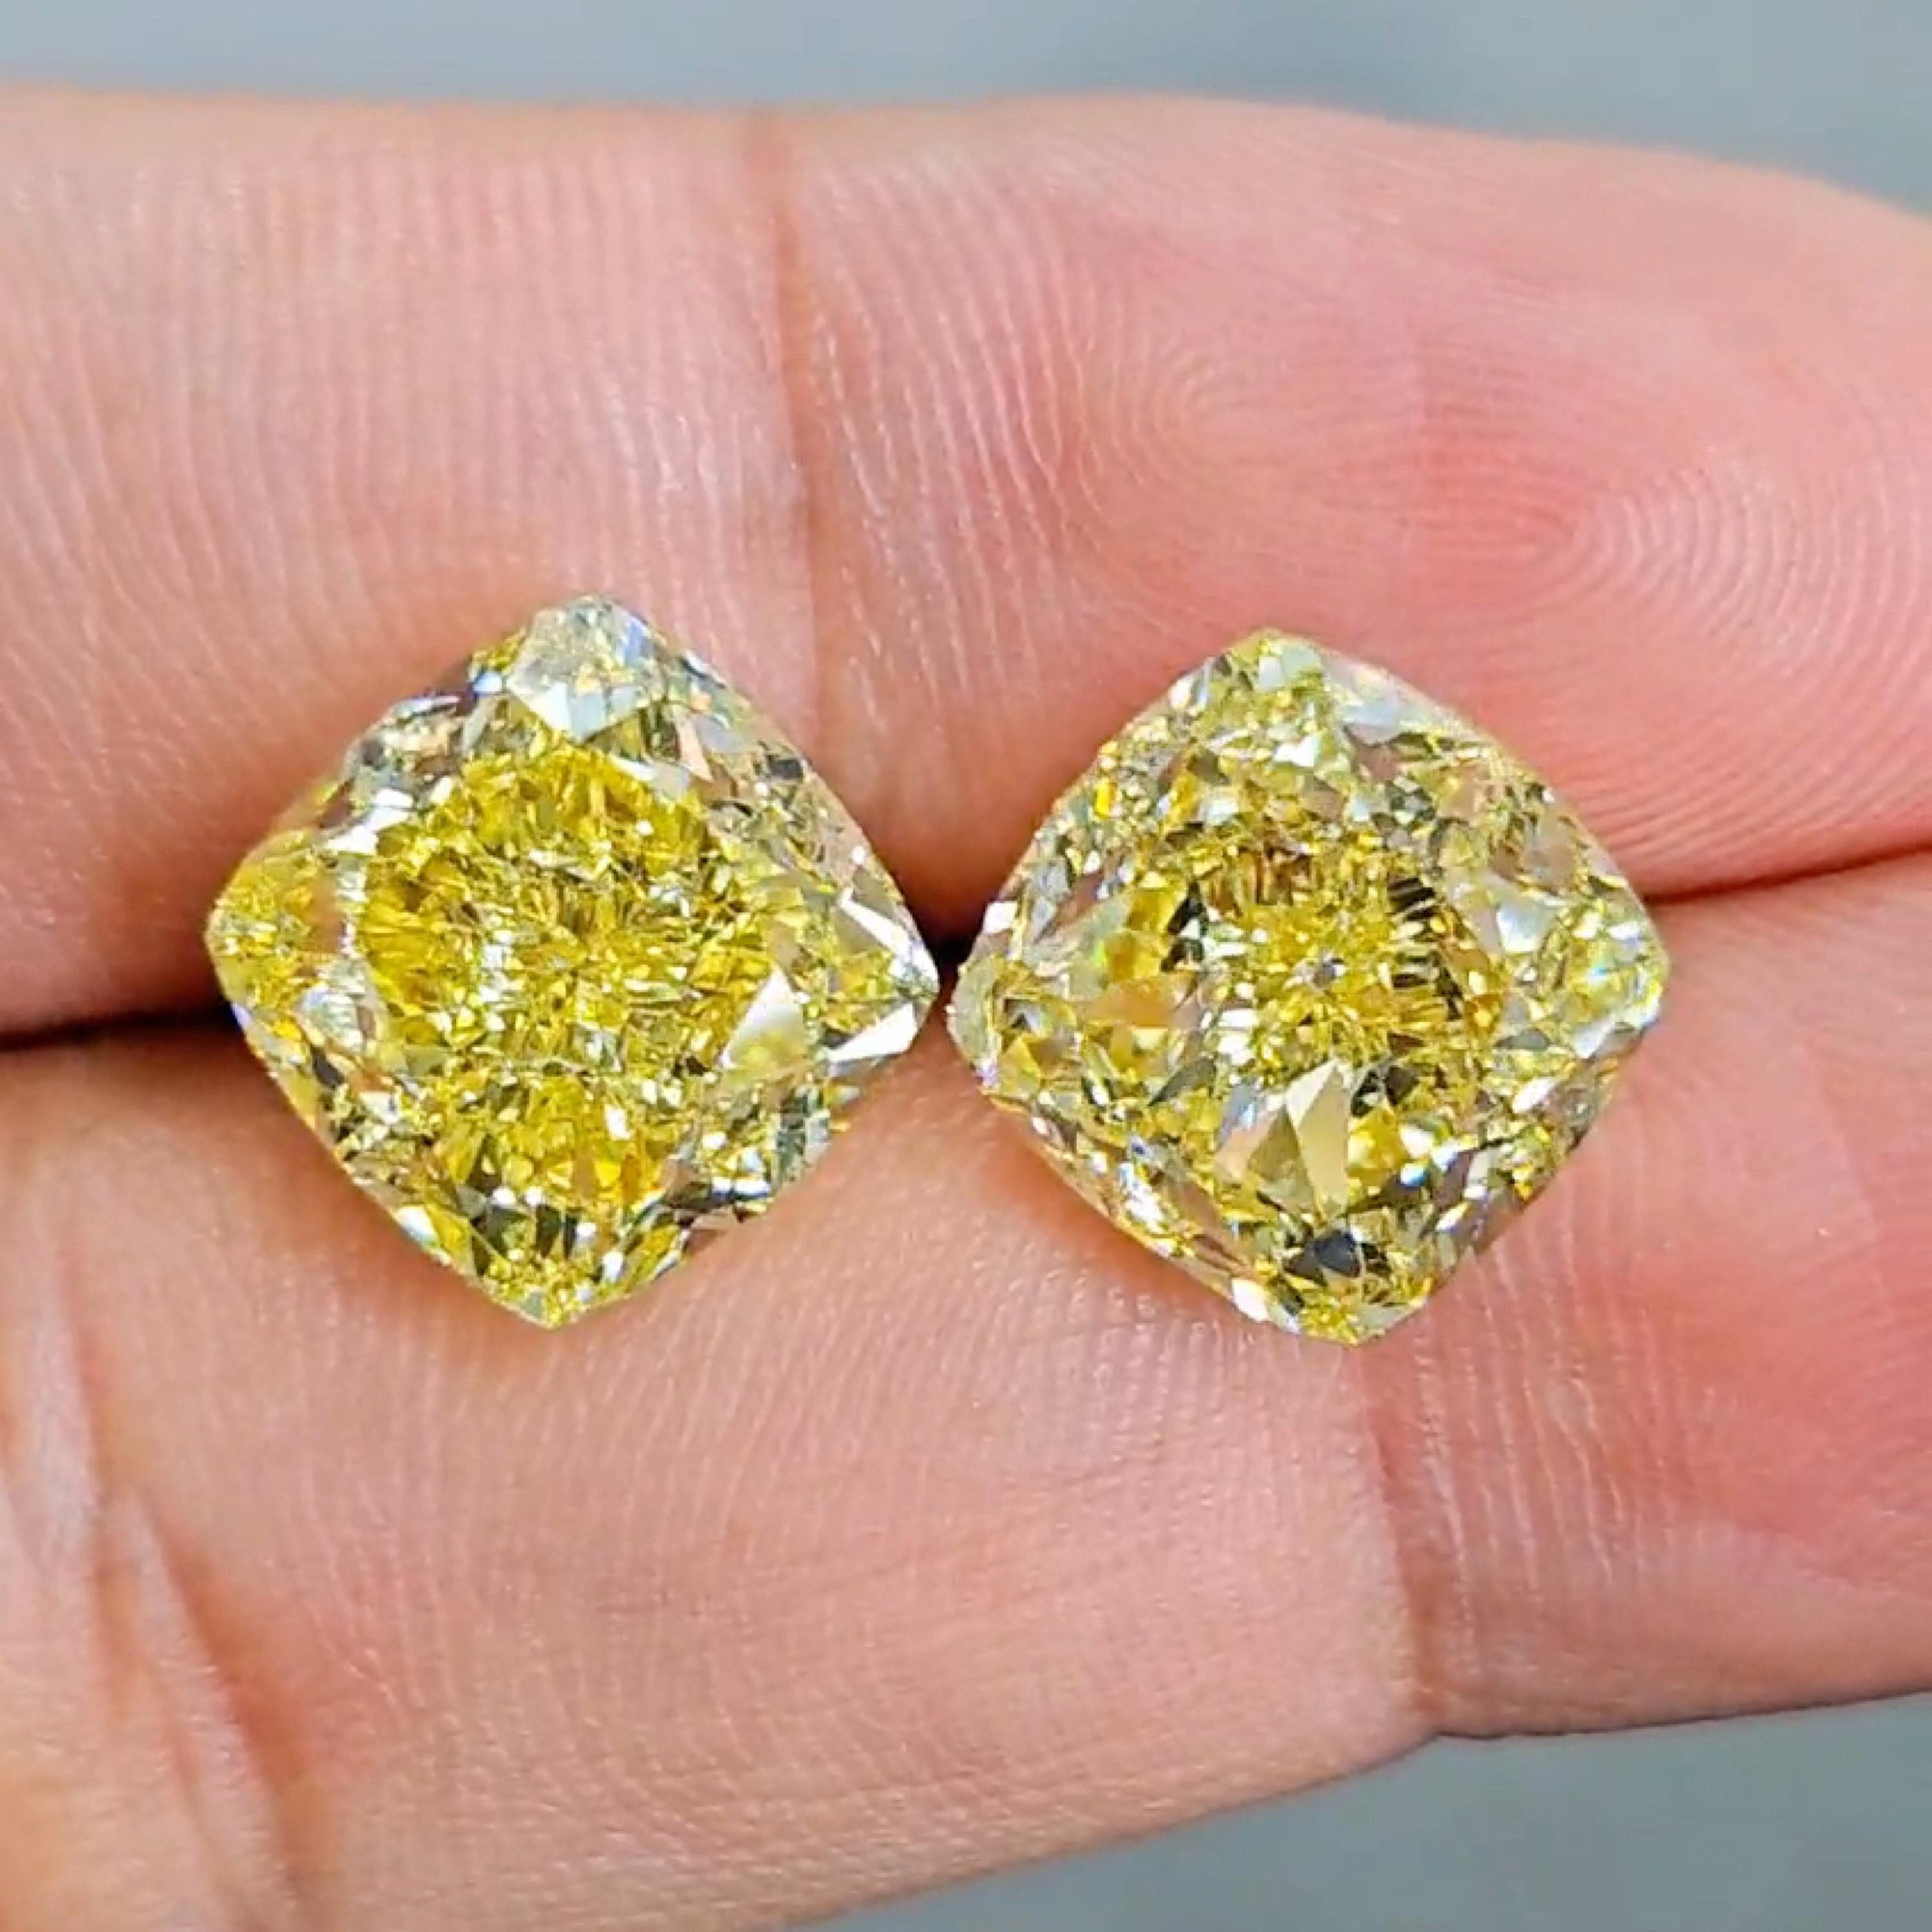 Emilio Jewelry, un grossiste/détaillant bien connu et respecté situé sur l'emblématique Cinquième Avenue de New York, 
Superbe paire de diamants de couleur naturelle jaune intense certifiés GIA pesant plus de 10,00 carats chacun et 20 carats au